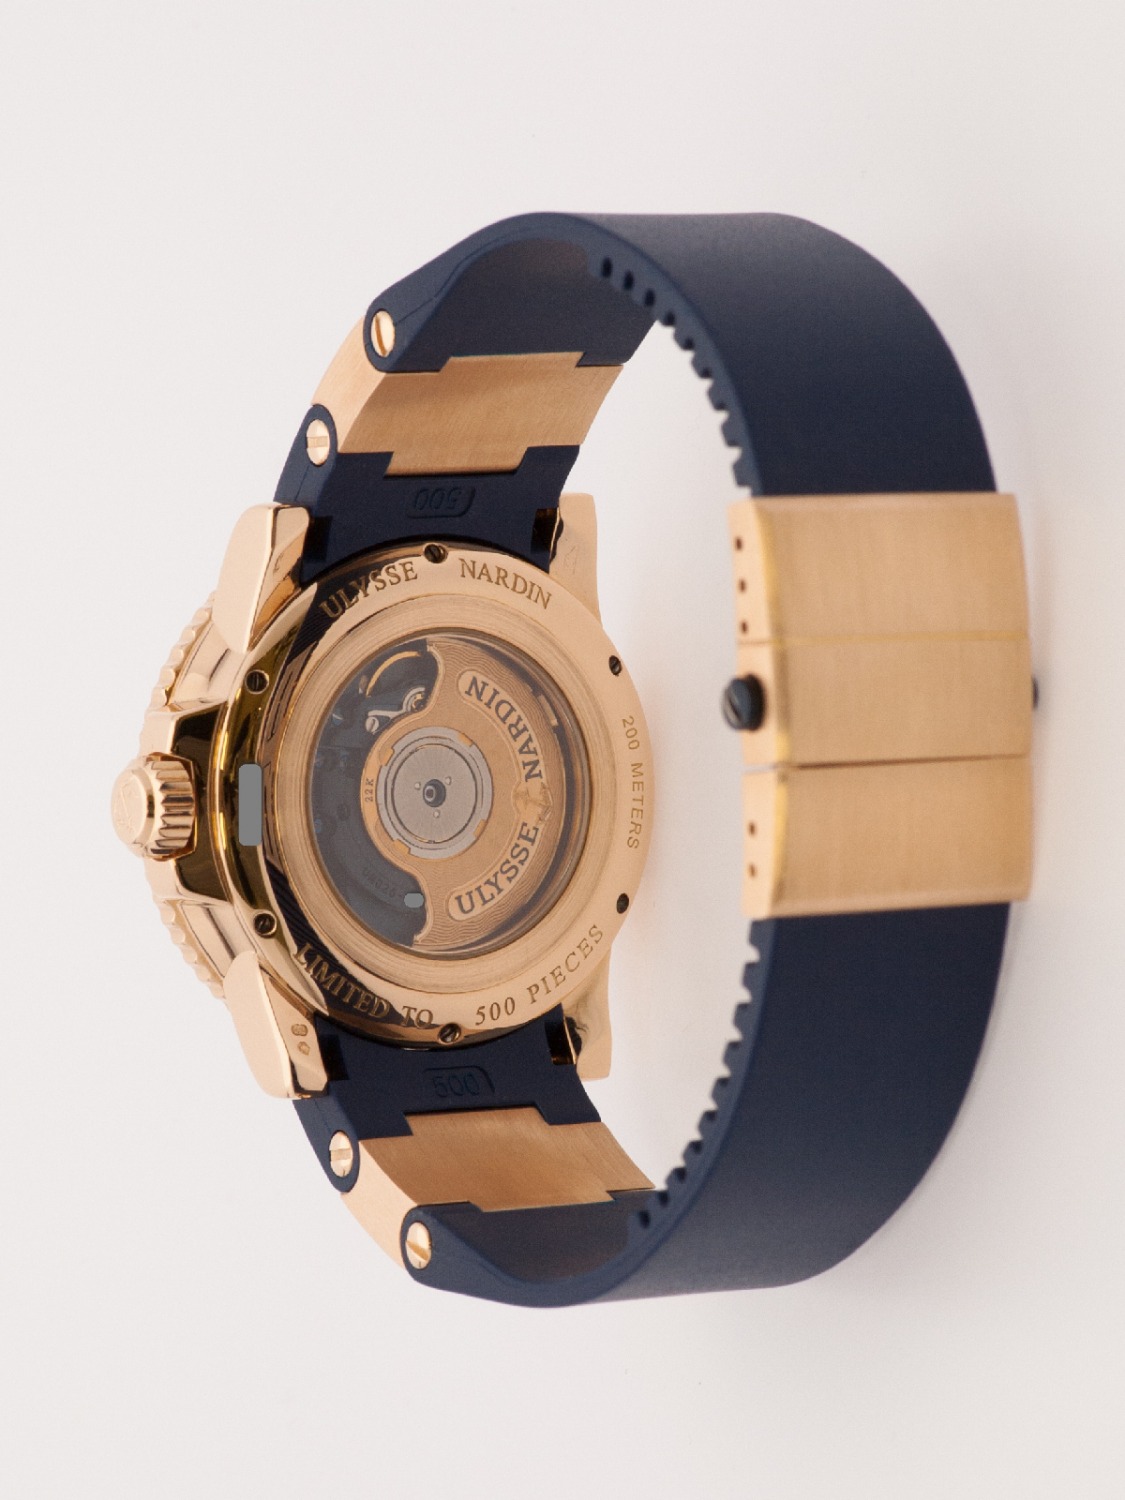 Ulysse Nardin Maxi Marine Diver Blue Surf Limited 500 pcs watch, rose gold